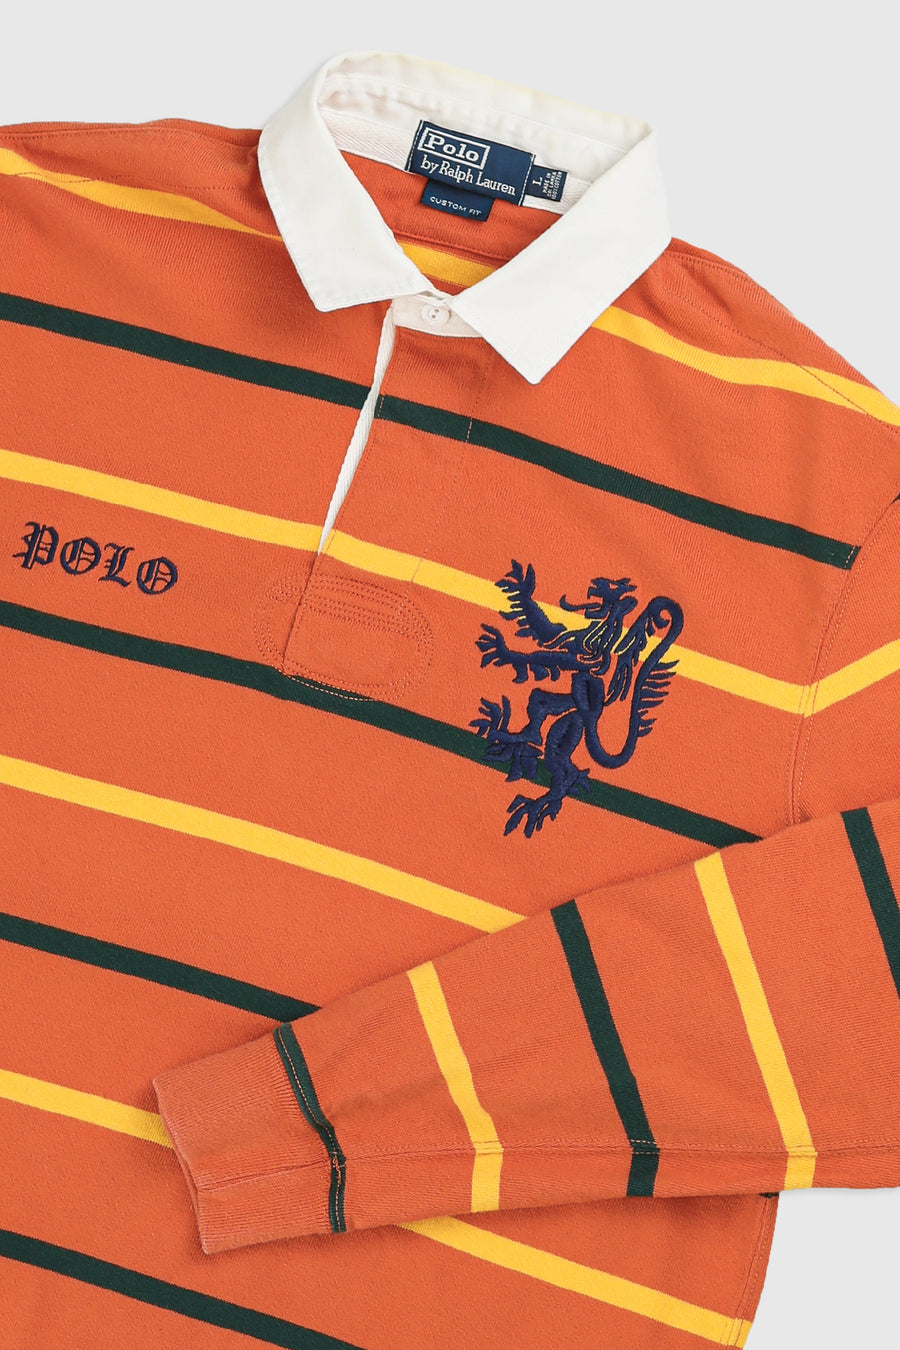 Vintage Rugby Shirt - L